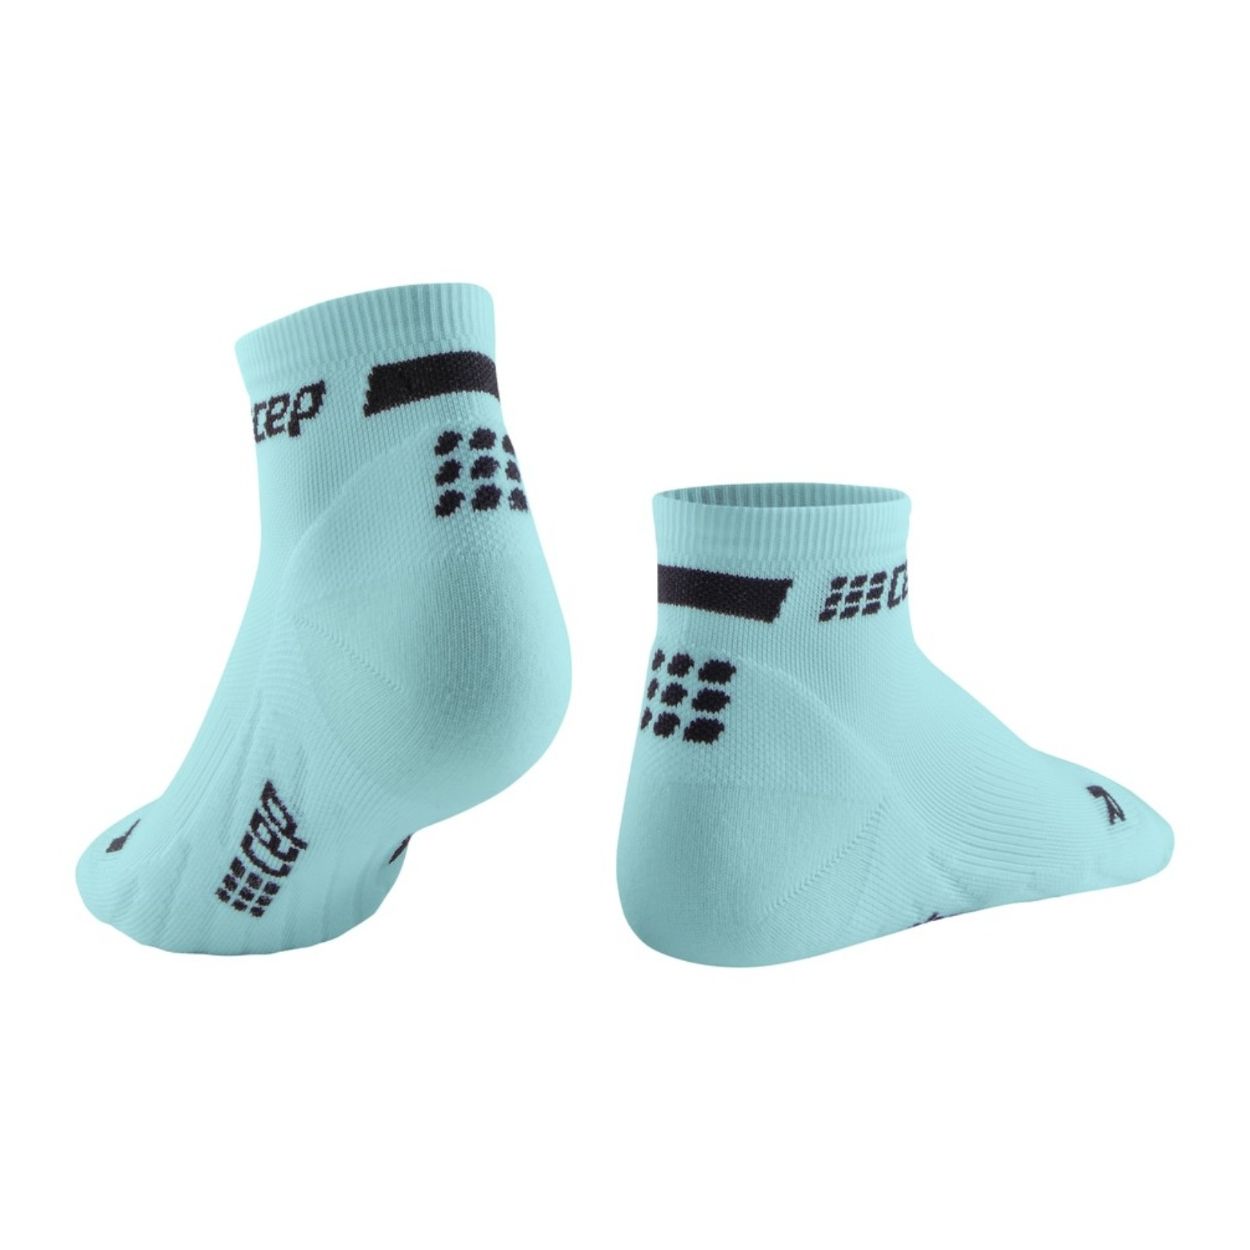 CEP The Run Compression Socks - Low Cut, Damen, hellblau